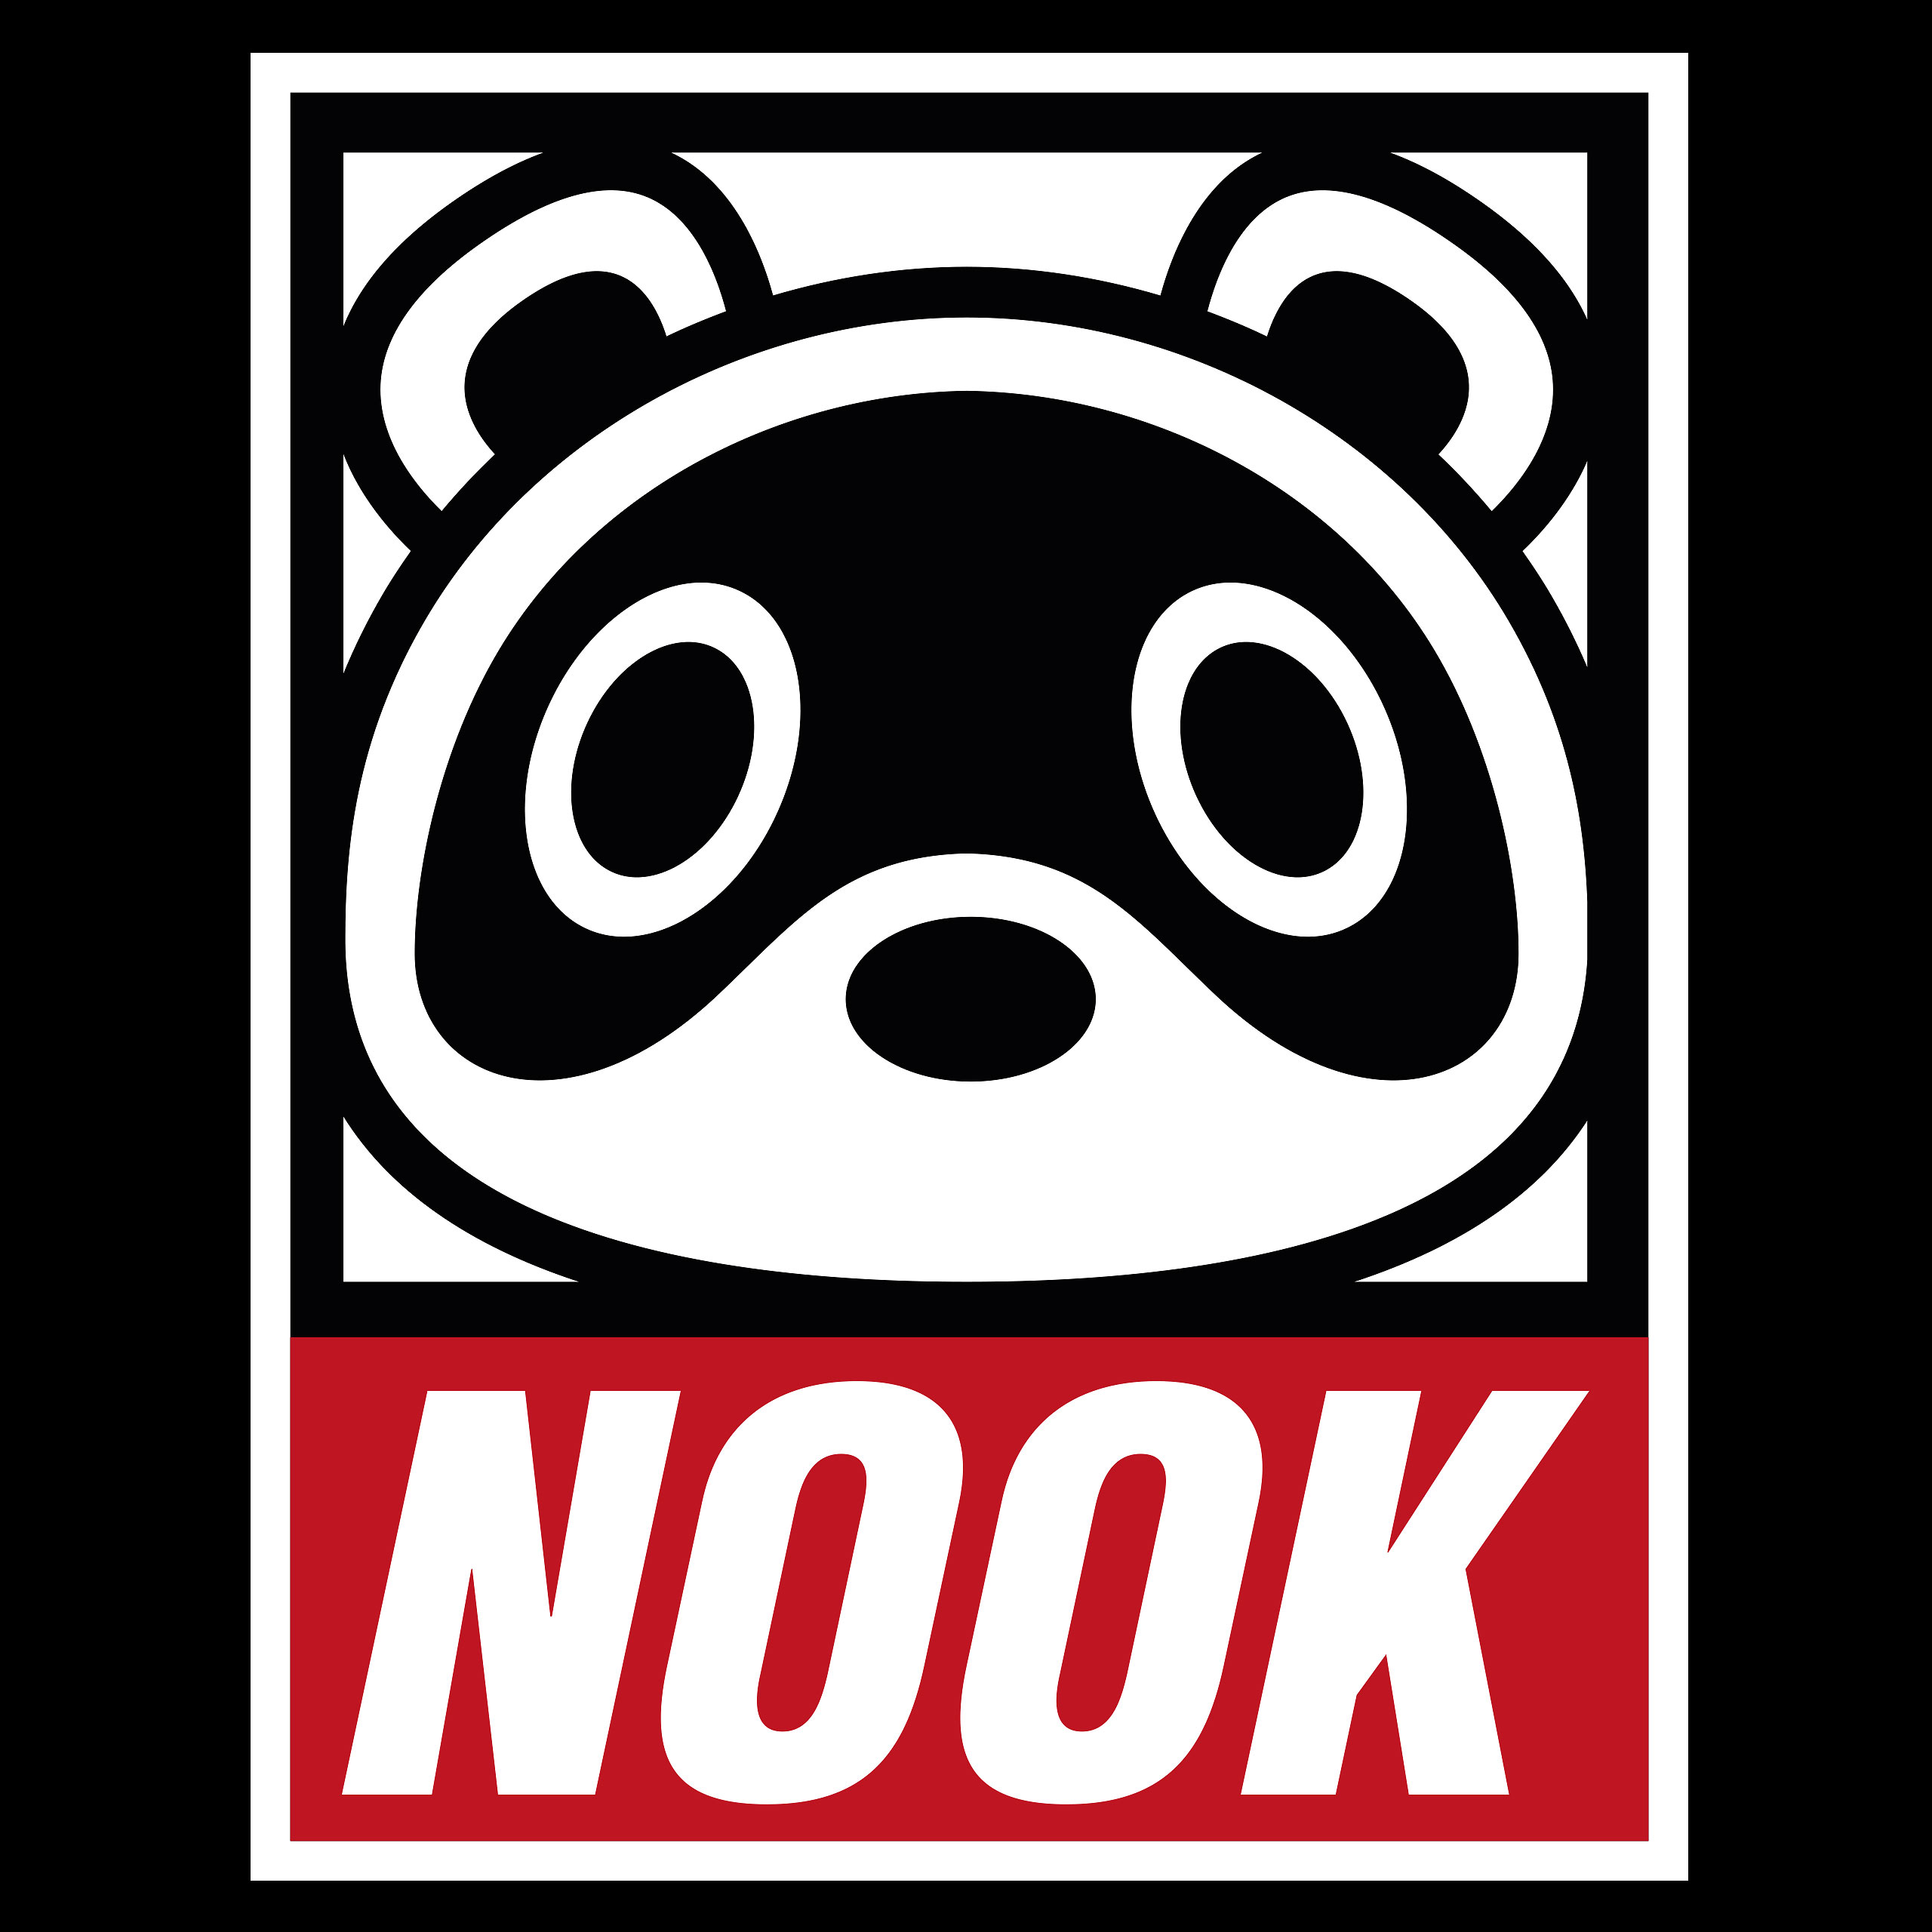 Tom Nook T-Shirt für Animal Crossing Fans schwarz